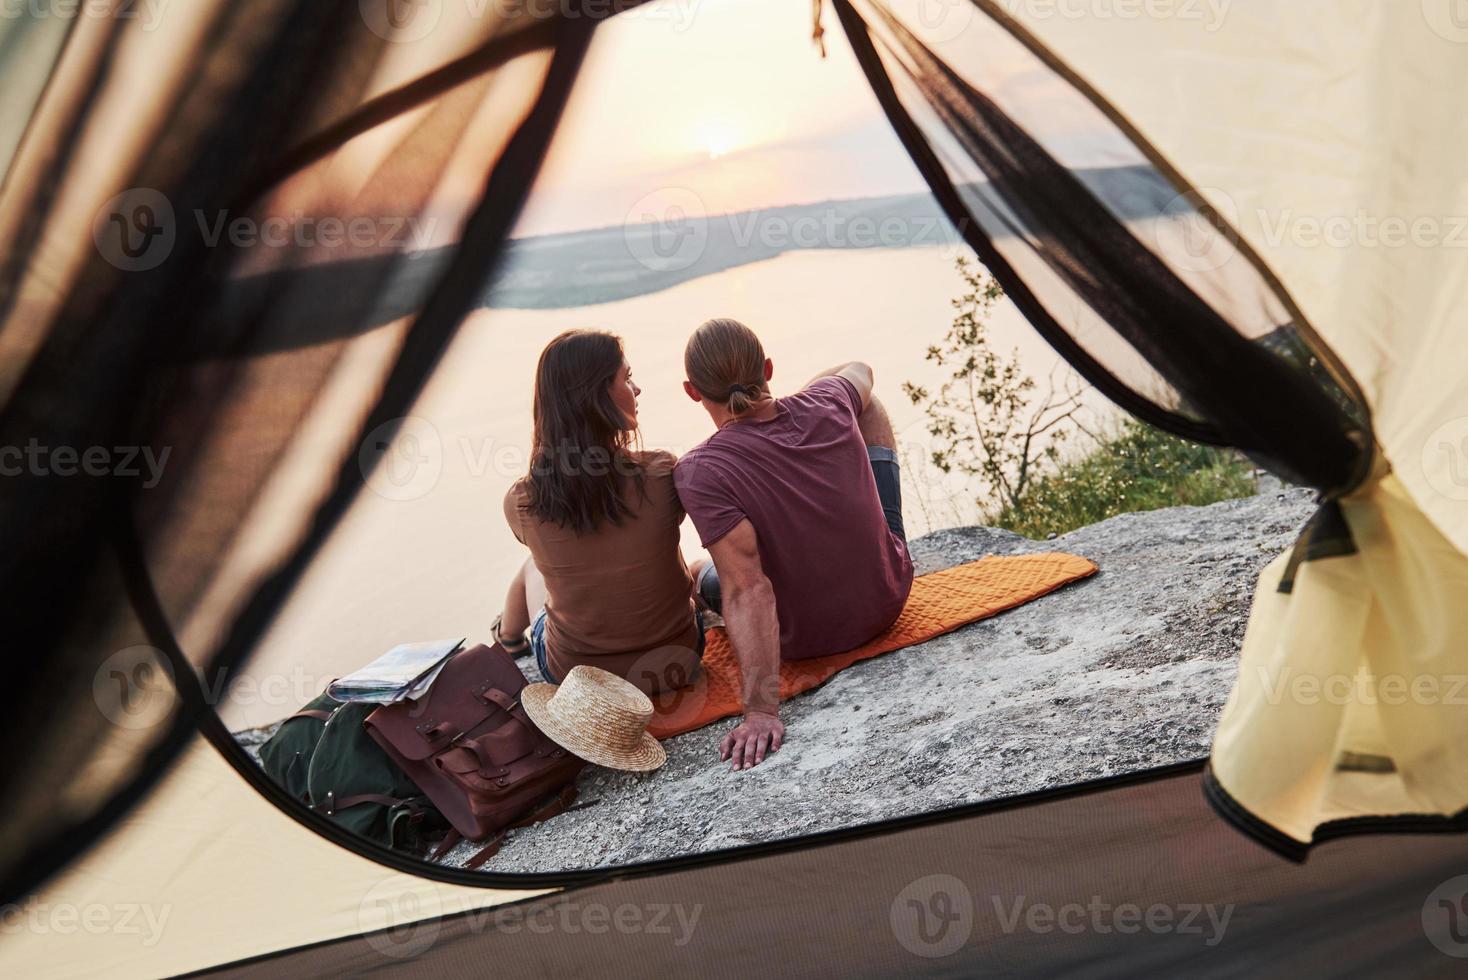 foto van een gelukkig stel dat tijdens een wandeltocht in de tent zit met uitzicht op het meer. reizen levensstijl avontuur vakanties concept